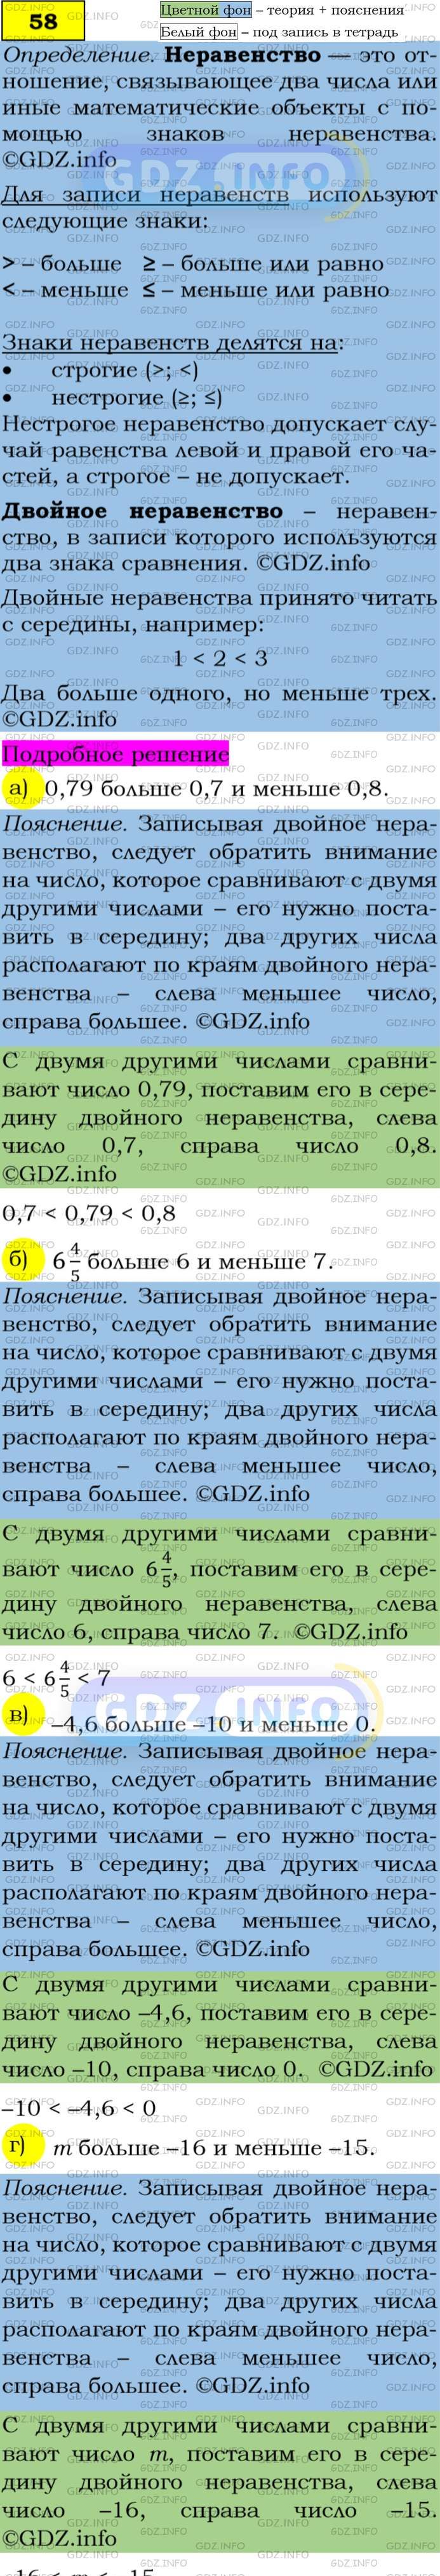 Фото подробного решения: Номер задания №58 из ГДЗ по Алгебре 7 класс: Макарычев Ю.Н.